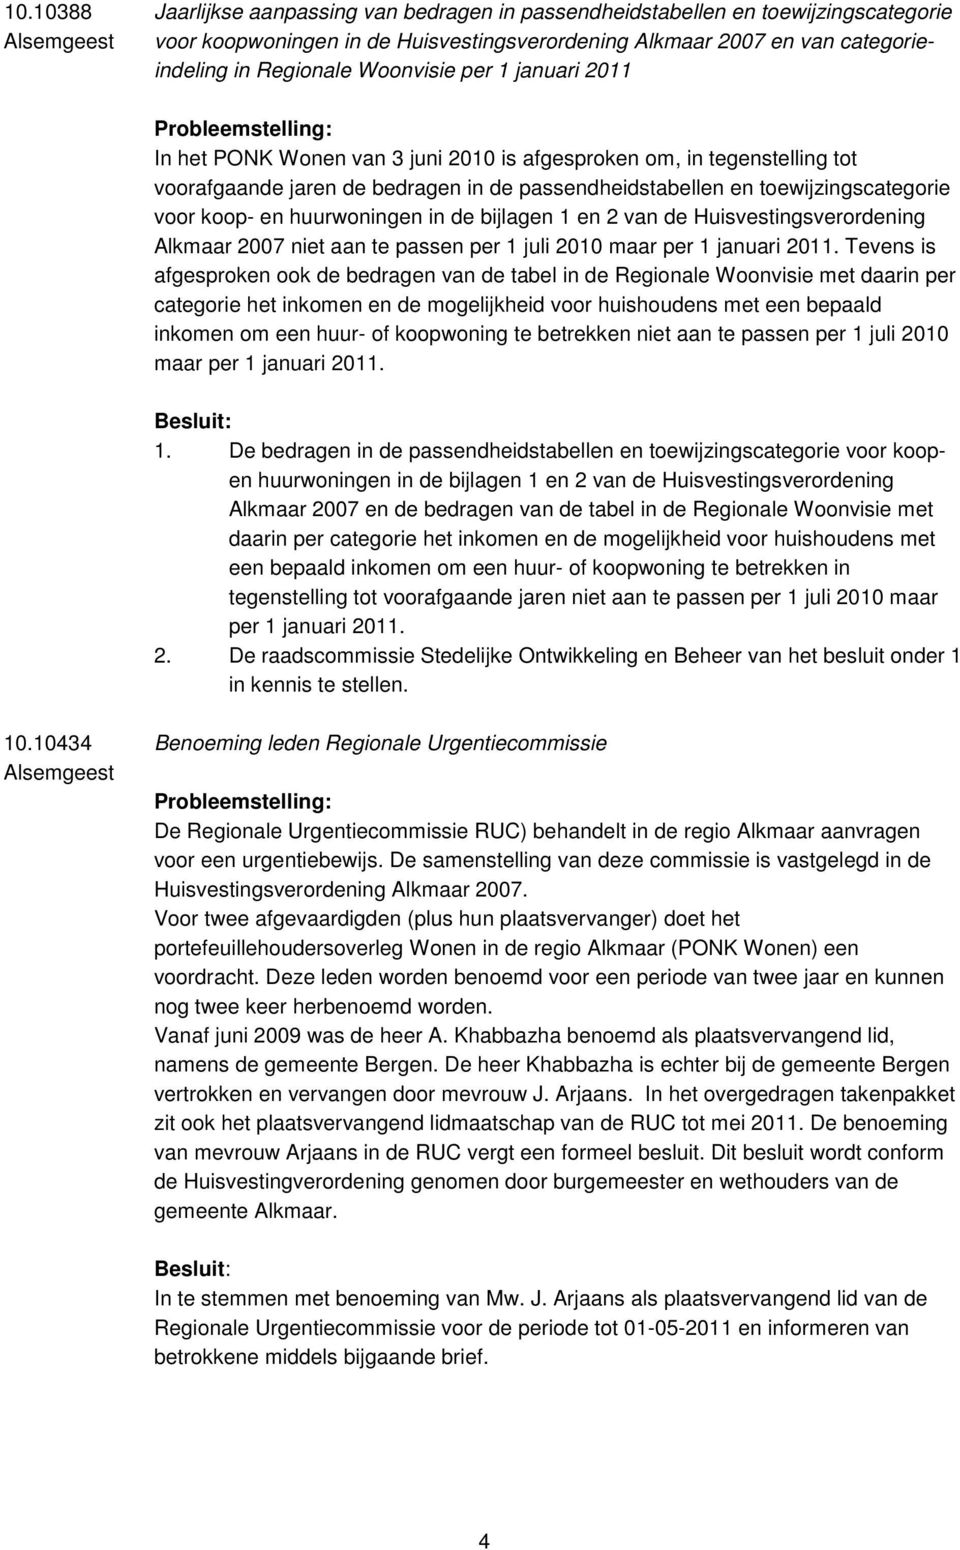 koop- en huurwoningen in de bijlagen 1 en 2 van de Huisvestingsverordening Alkmaar 2007 niet aan te passen per 1 juli 2010 maar per 1 januari 2011.